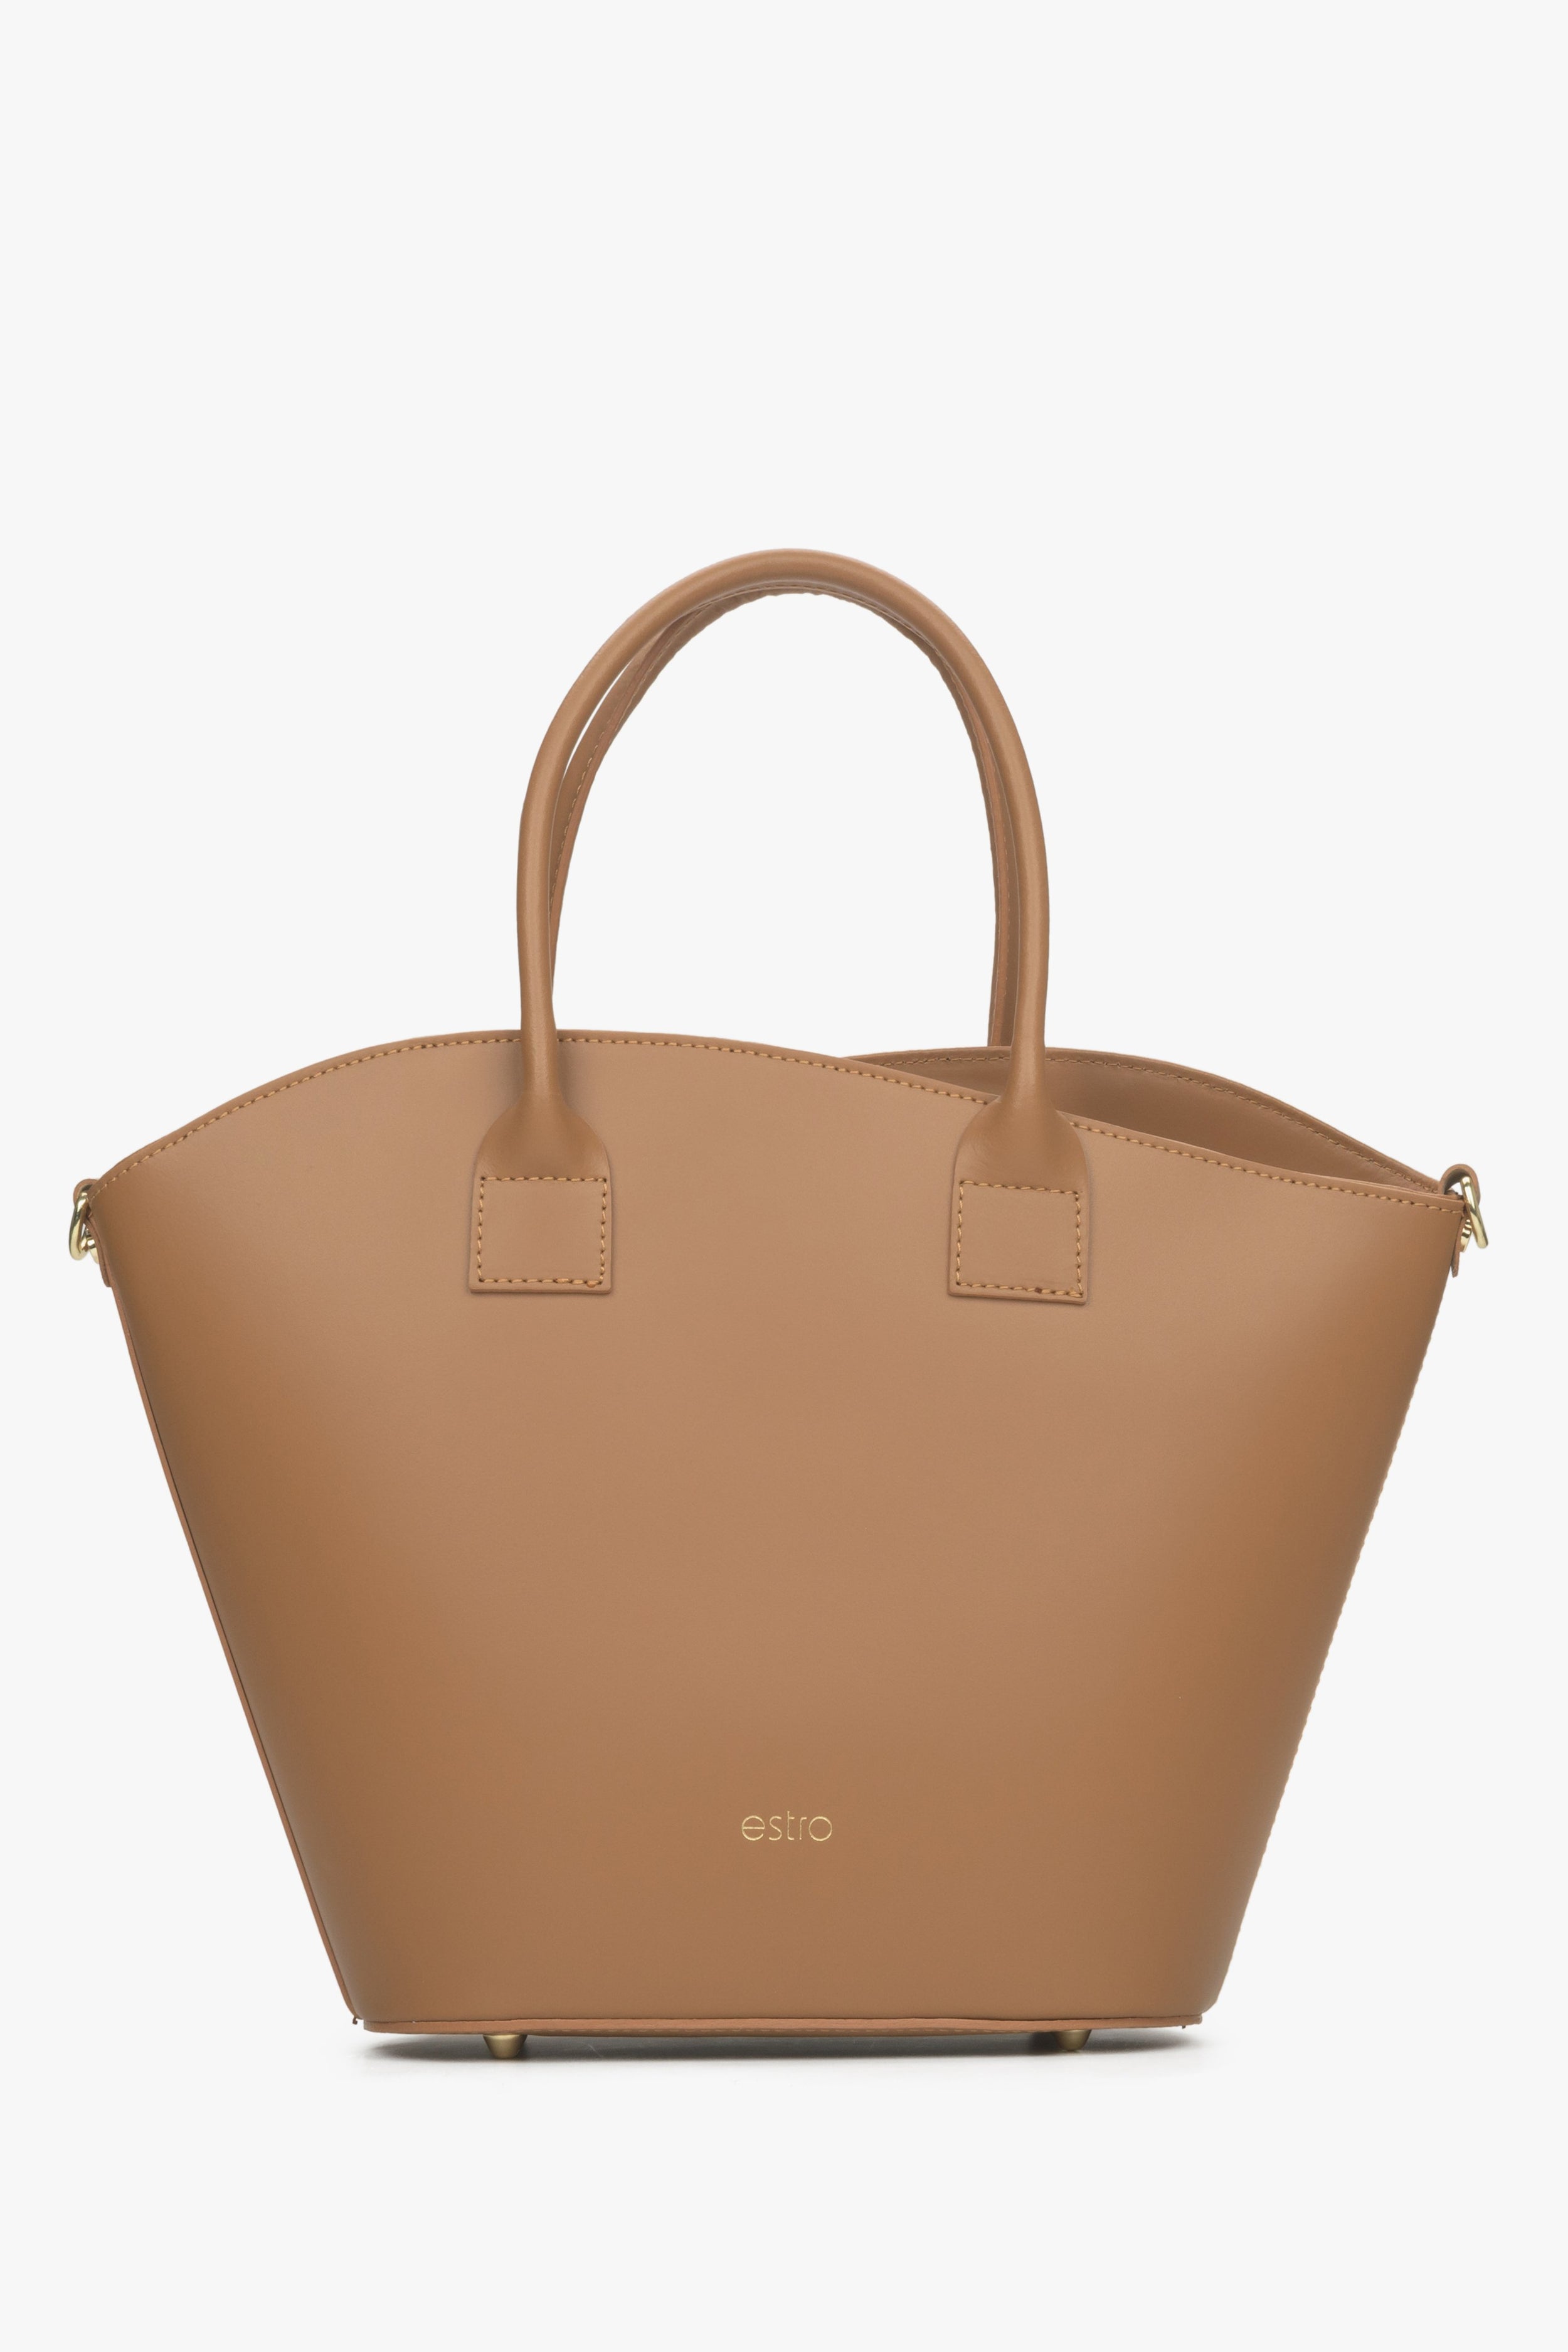 Estro: Brązowa torebka damska typu shopper z włoskiej skóry naturalnej Premium